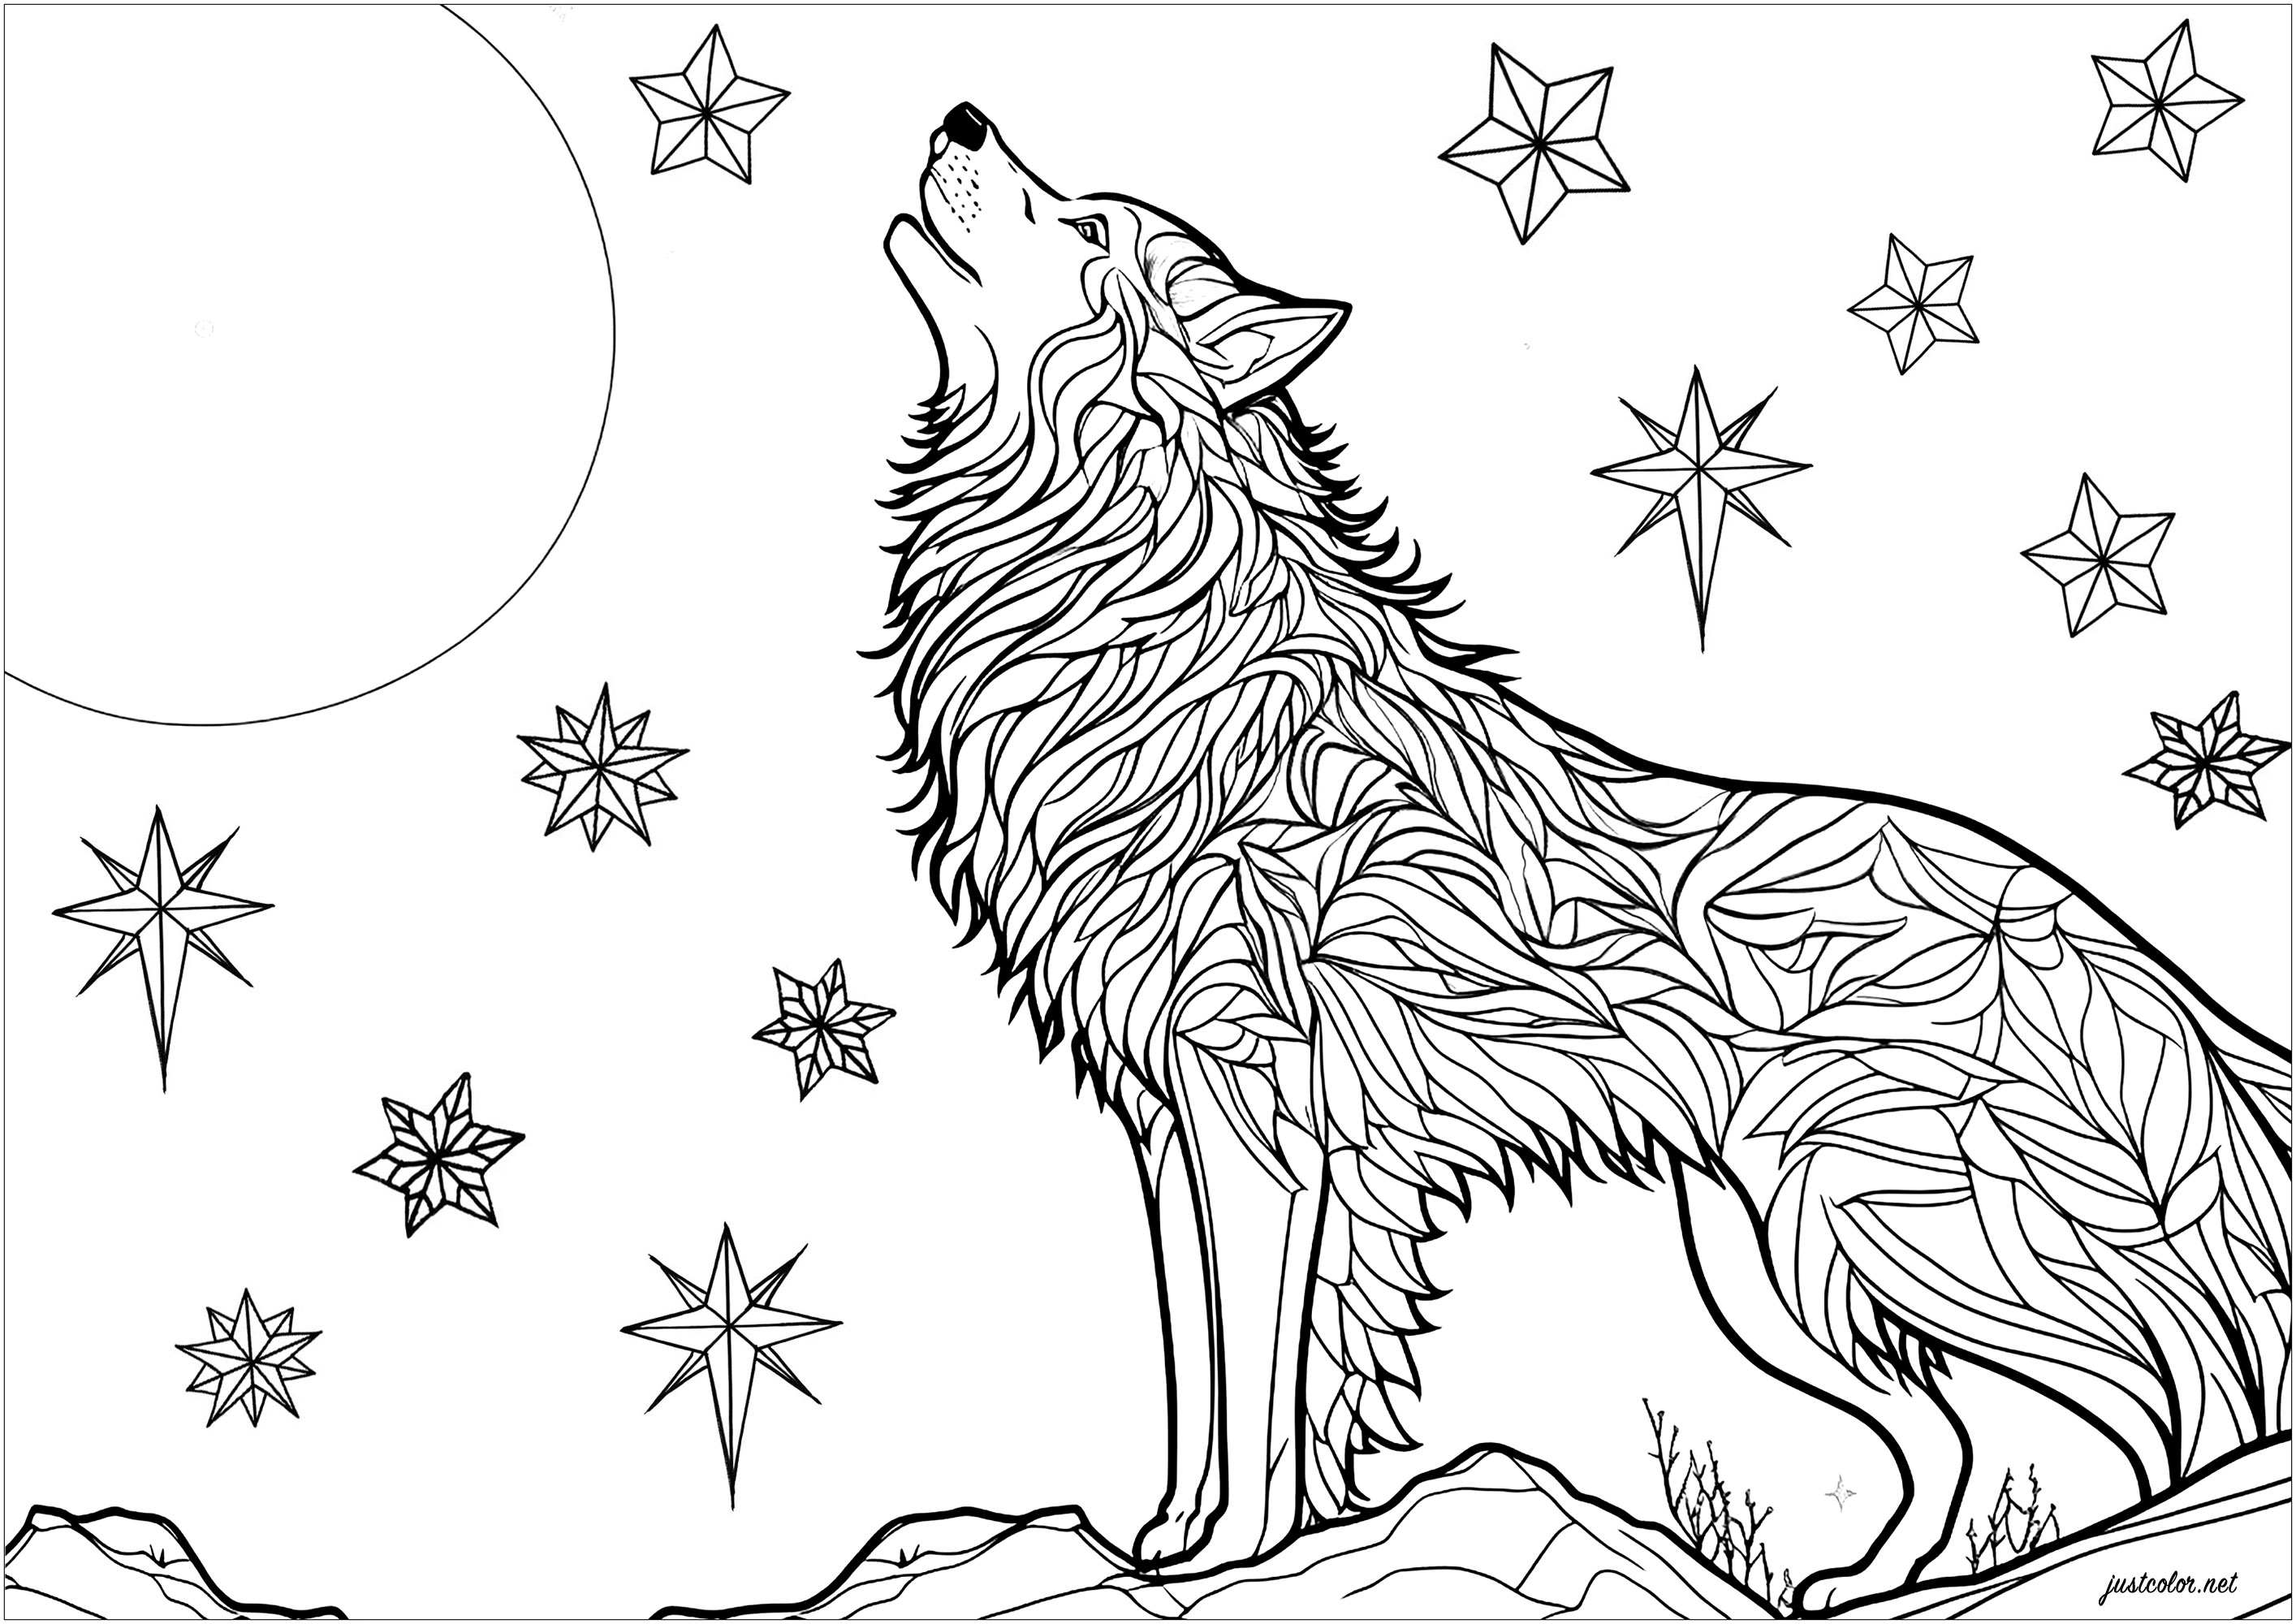 Coloreando un lobo aullando a la luz de la luna. Magnífica escena con un lobo aullando de noche, descansando sobre una roca. En el cielo nocturno se ven estrellas centelleantes. Los dibujos del pelaje del lobo se pueden colorear de forma independiente, para obtener un resultado lleno de misterio y magia.